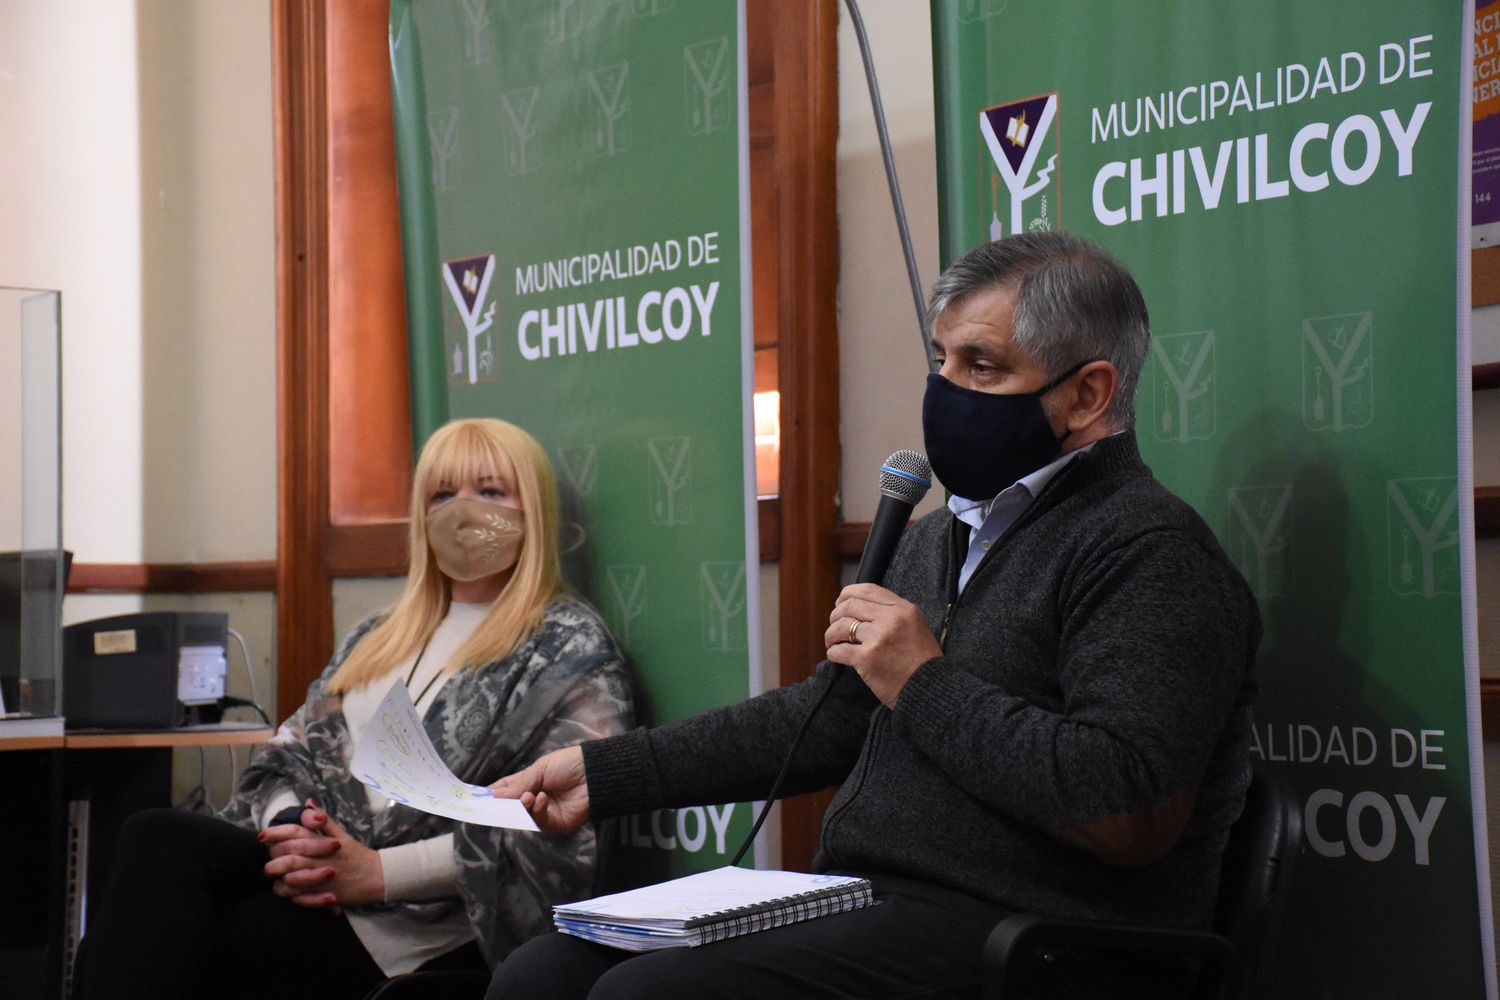 “Hoy tenemos reunión virtual con Kicillof para definir cómo continúa la cuarentena”, afirmó intendente de Chivilcoy